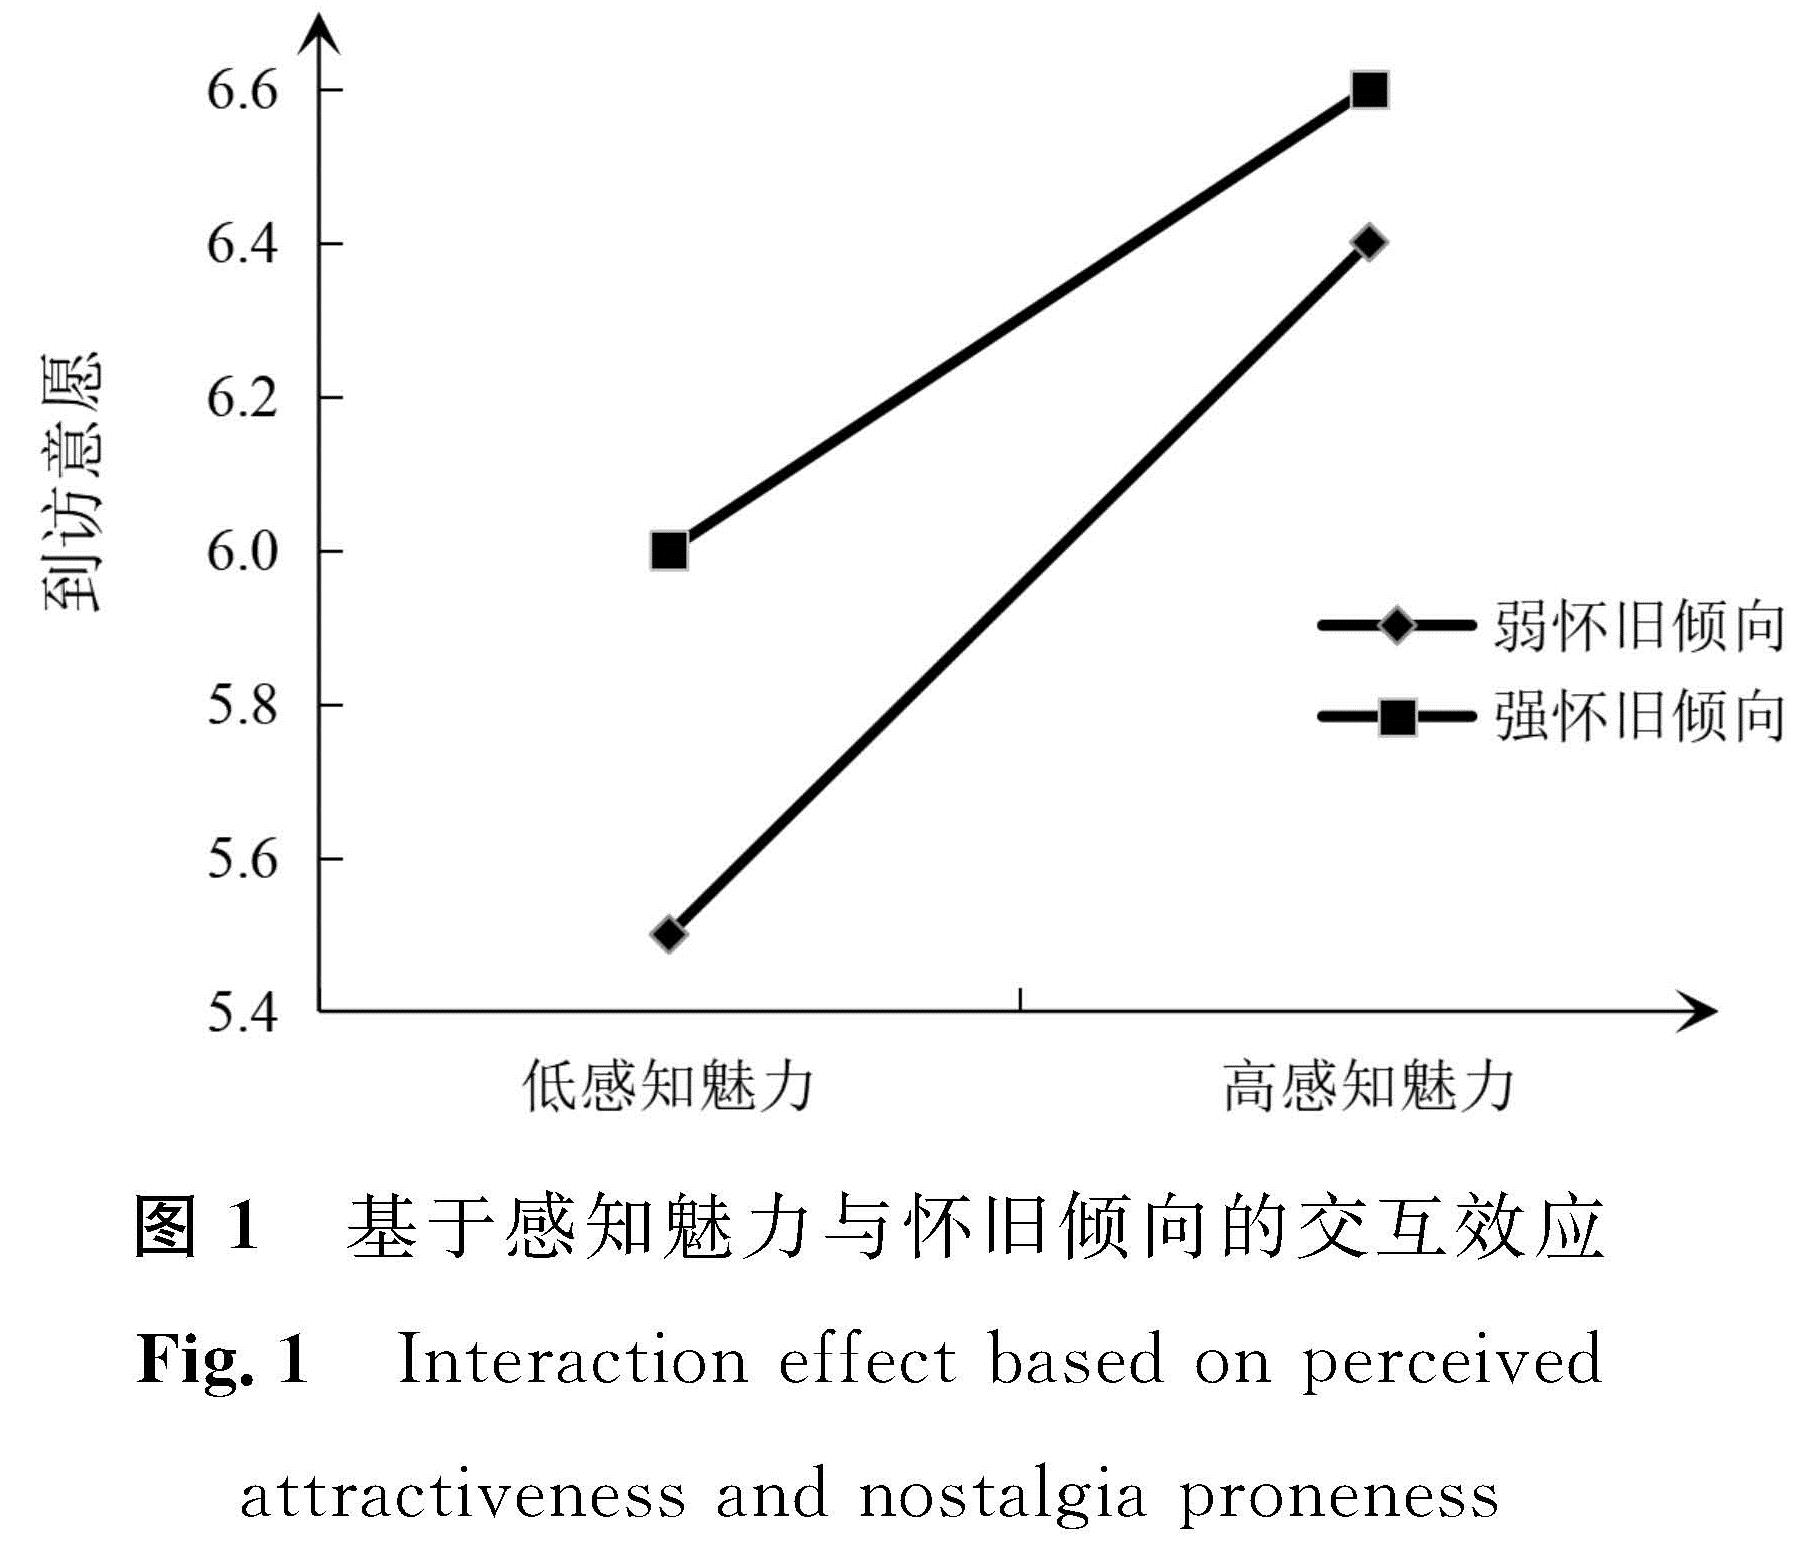 图1 基于感知魅力与怀旧倾向的交互效应<br/>Fig.1 Interaction effect based on perceived attractiveness and nostalgia proneness